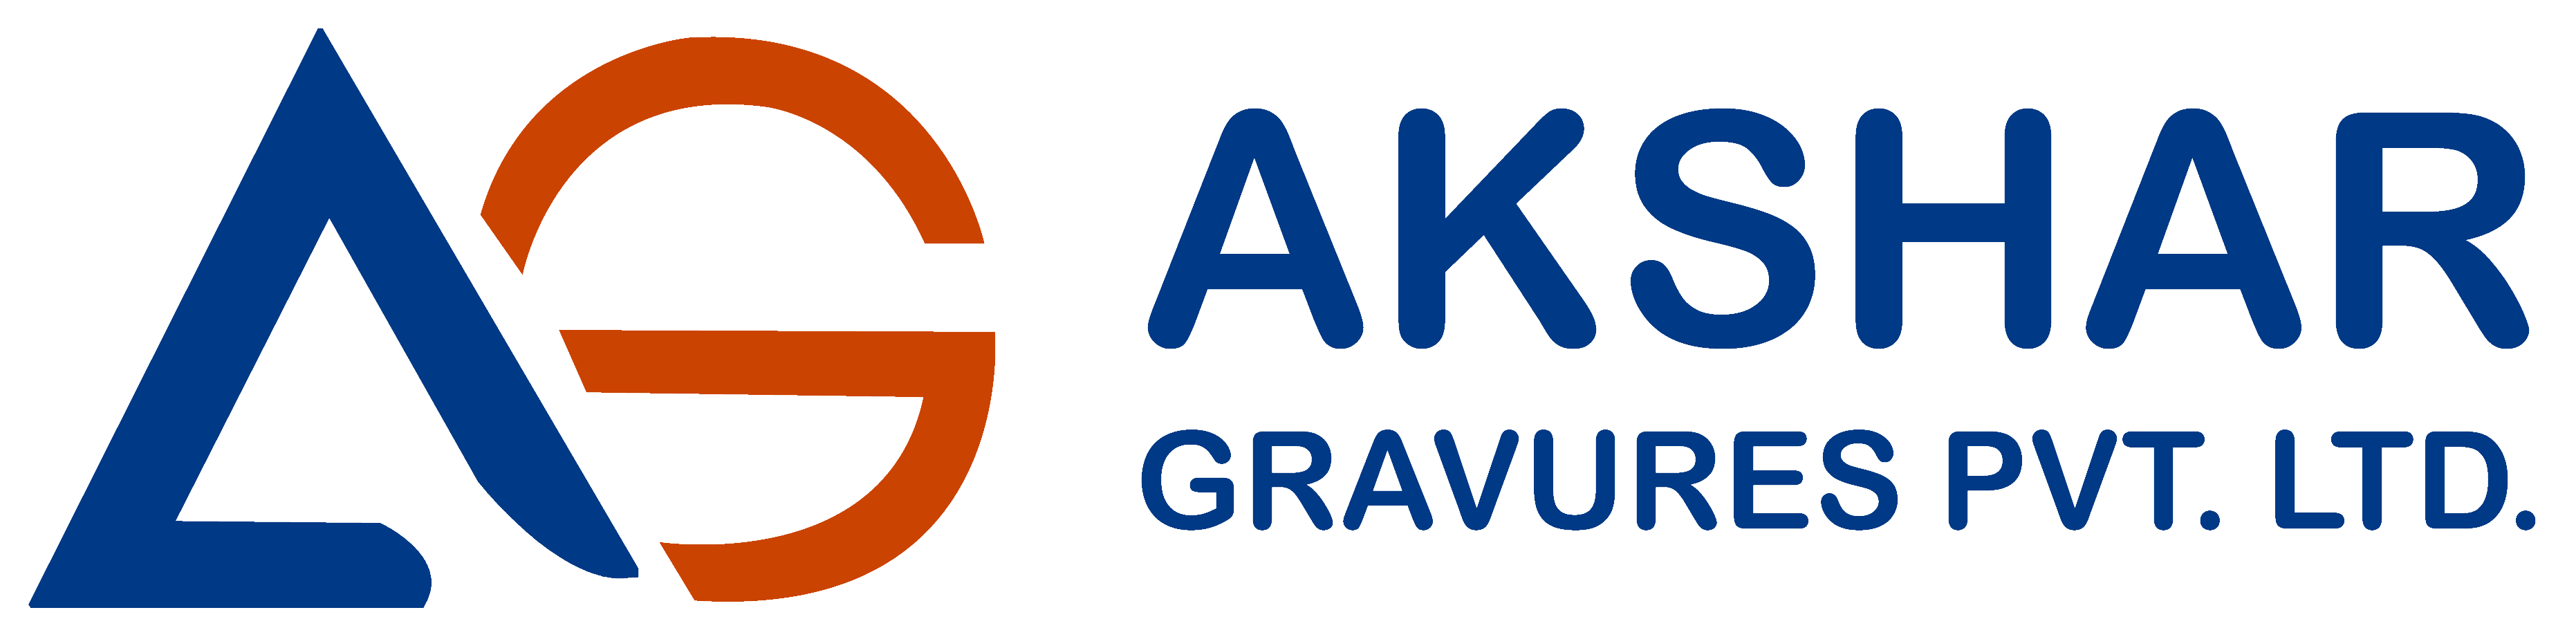 AKSHAR GRAVURES PRIVATE LTD